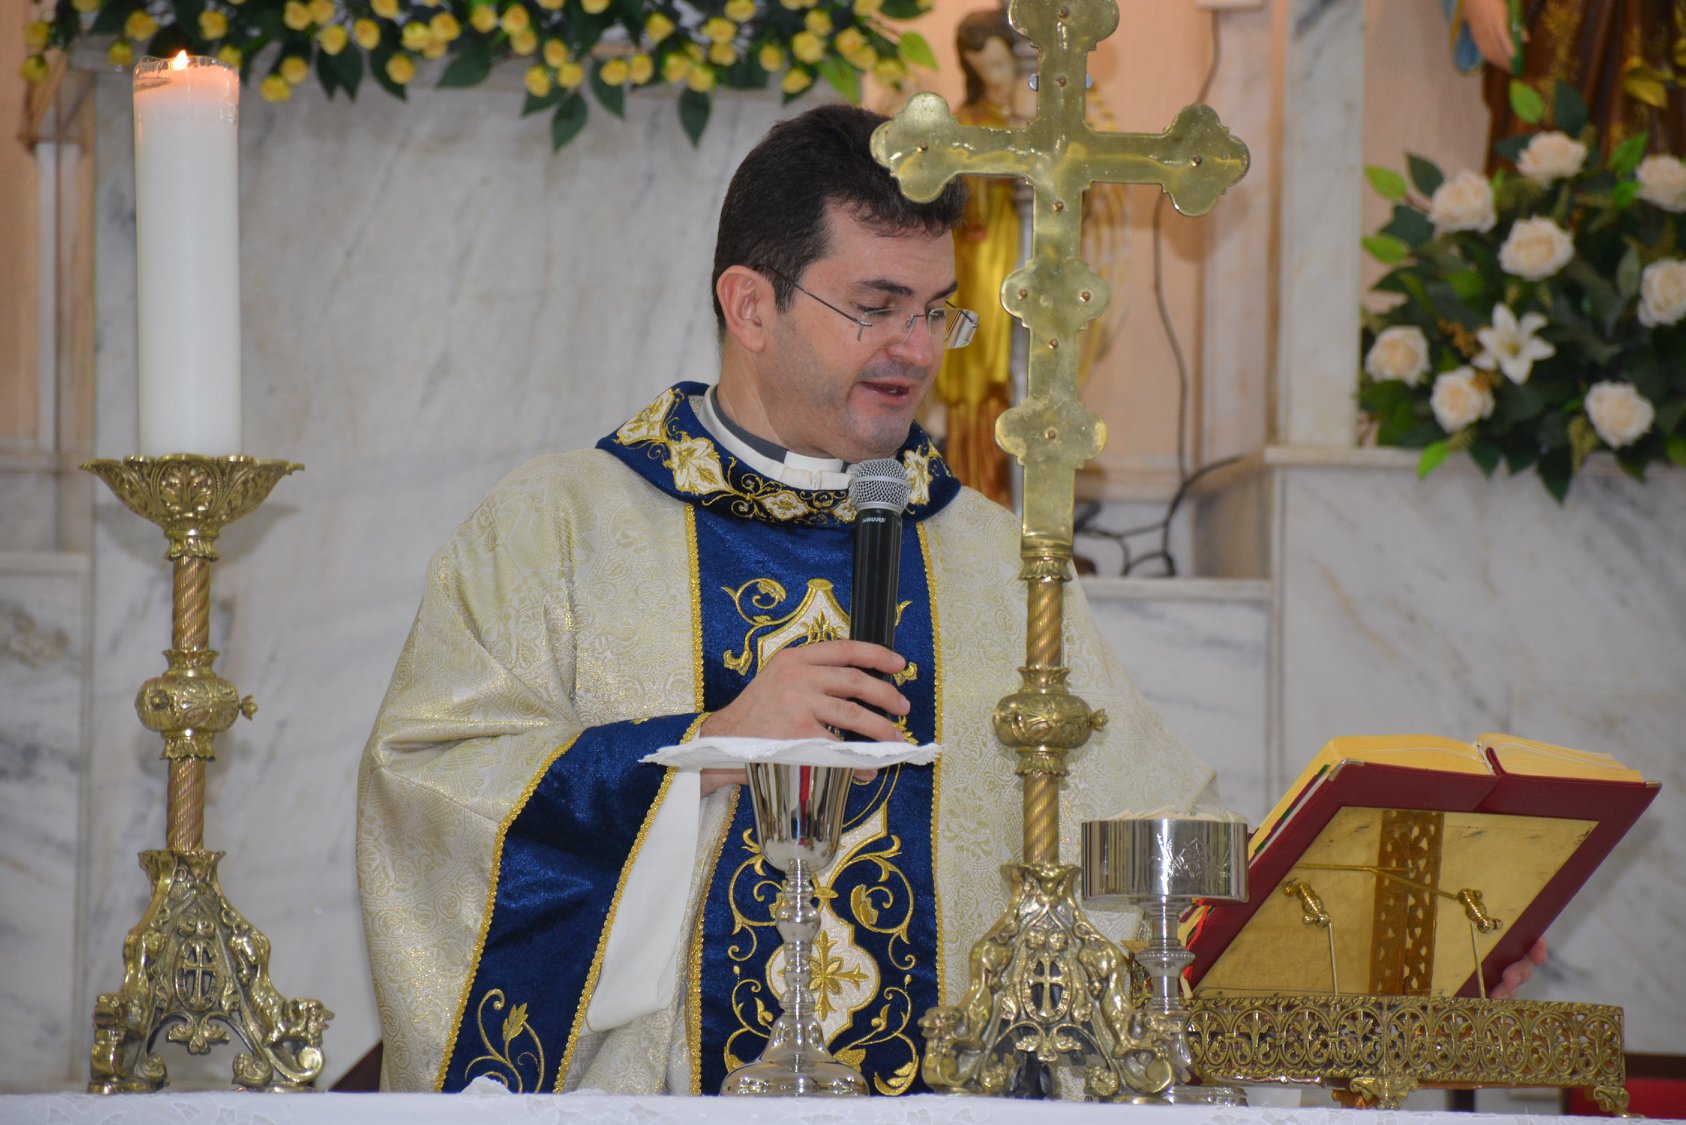 Padre Alcivan Tadeus comemora seus seus 26 anos de ordenação sacerdotal.